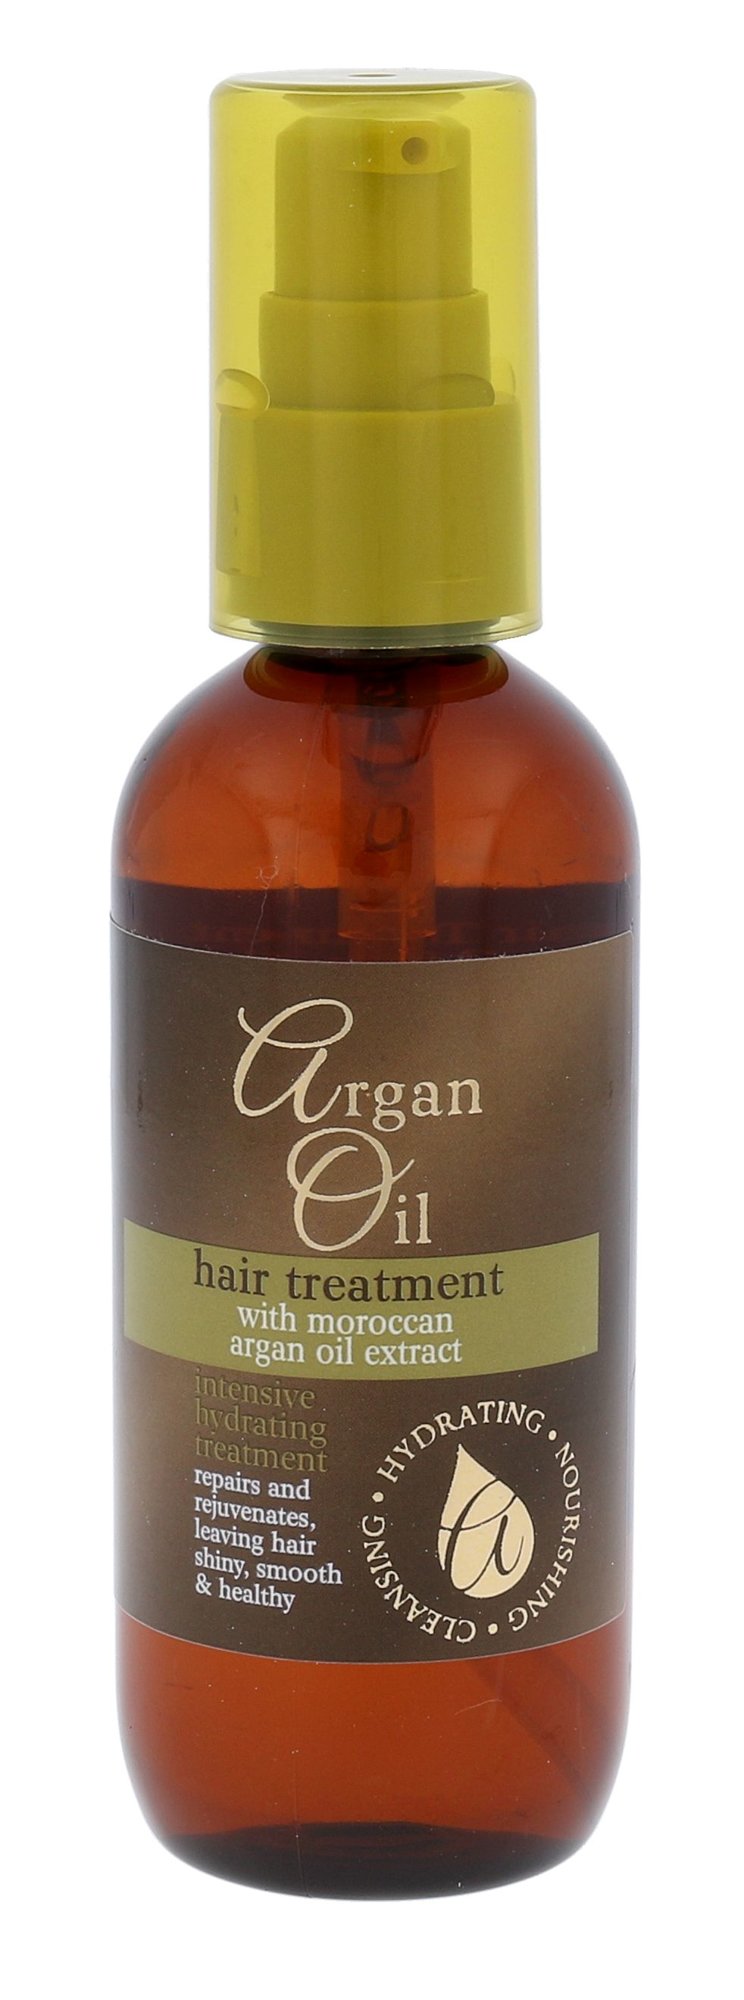 Argan Oil Hair Treatment